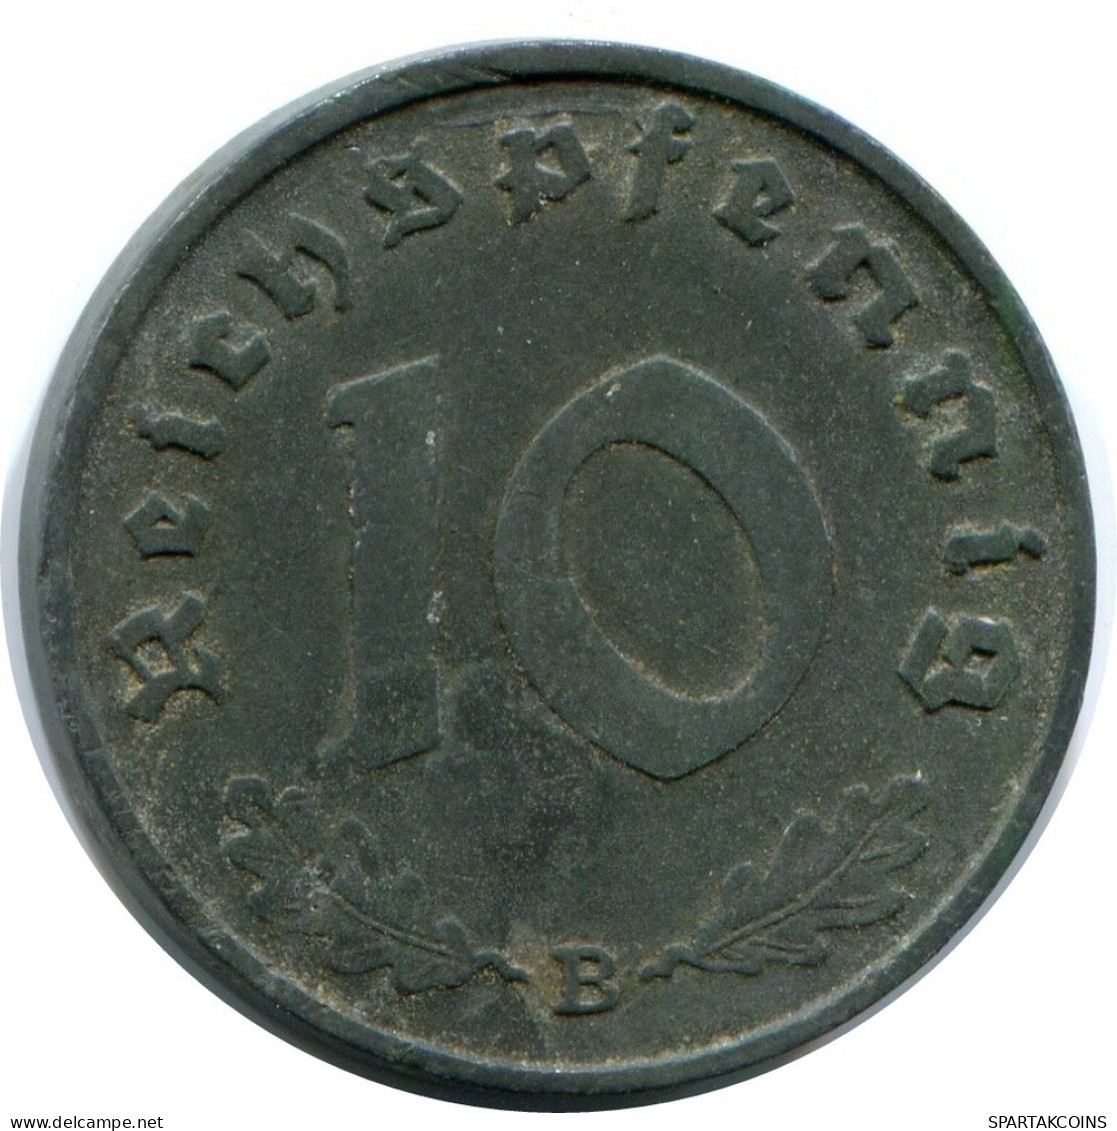 10 REICHSPFENNIG 1941 B GERMANY Coin #DA792.U.A - 10 Reichspfennig